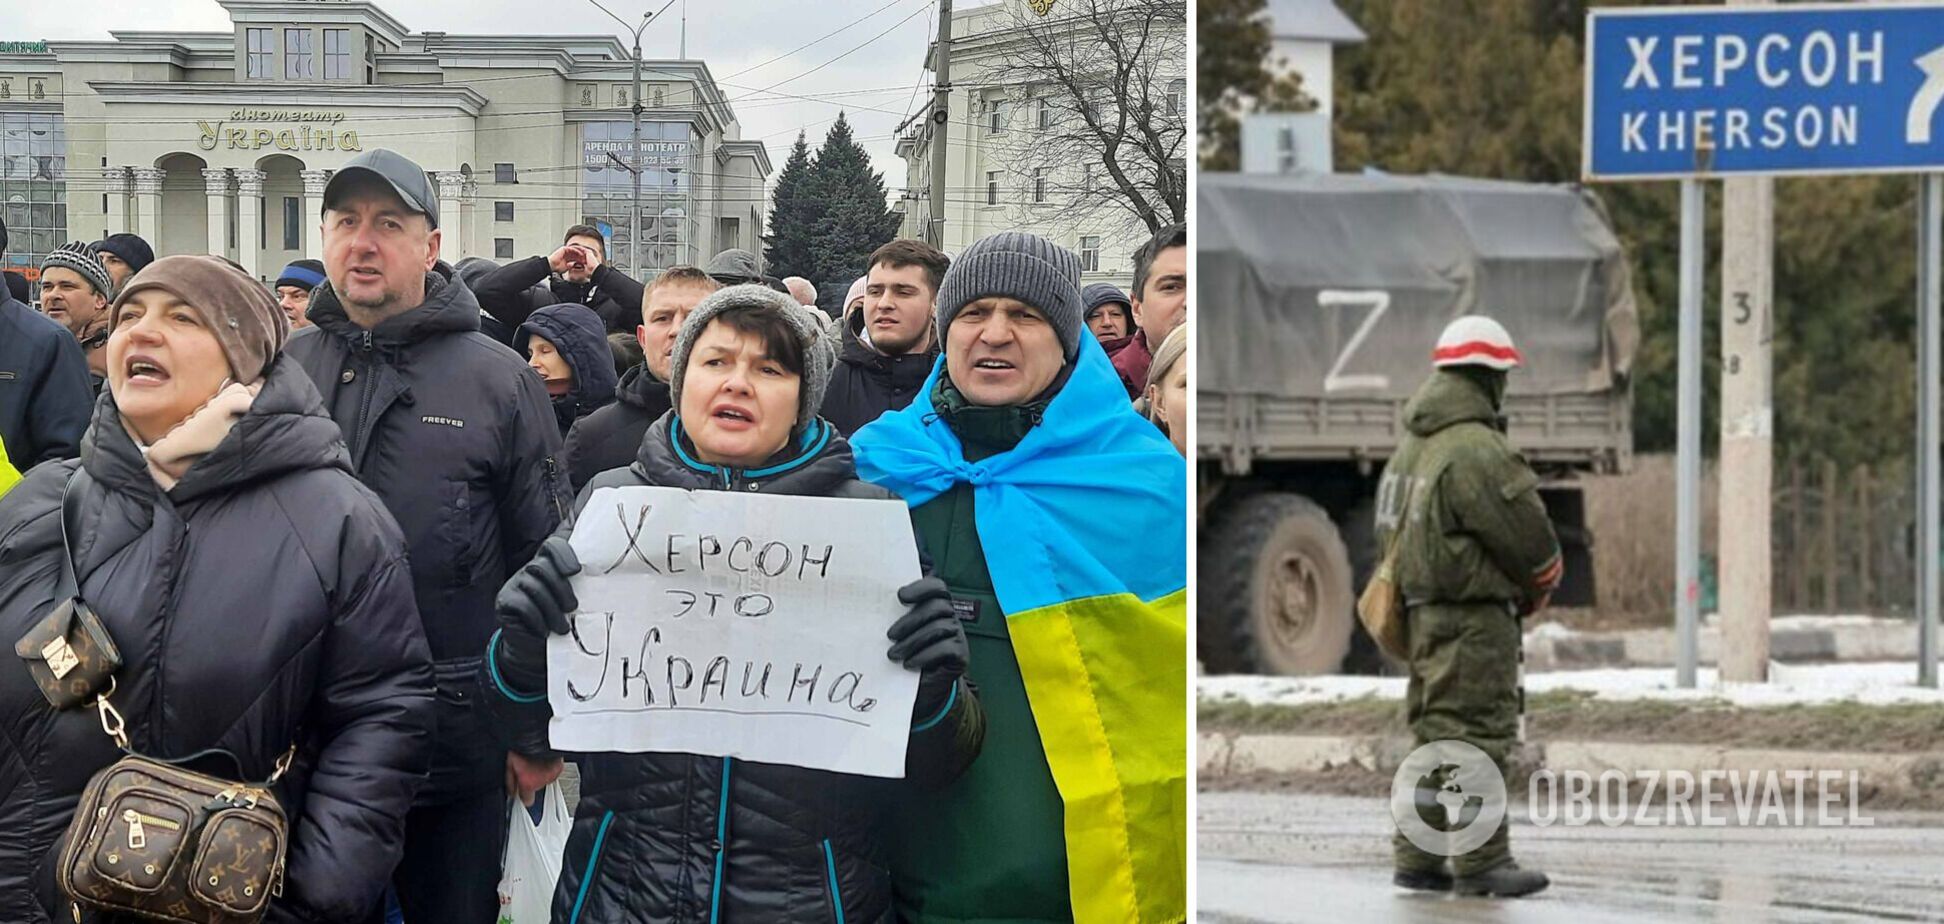 Окупанти готуються святкувати день Росії на захоплених територіях, незважаючи на гуманітарну катастрофу, – ОК 'Південь'